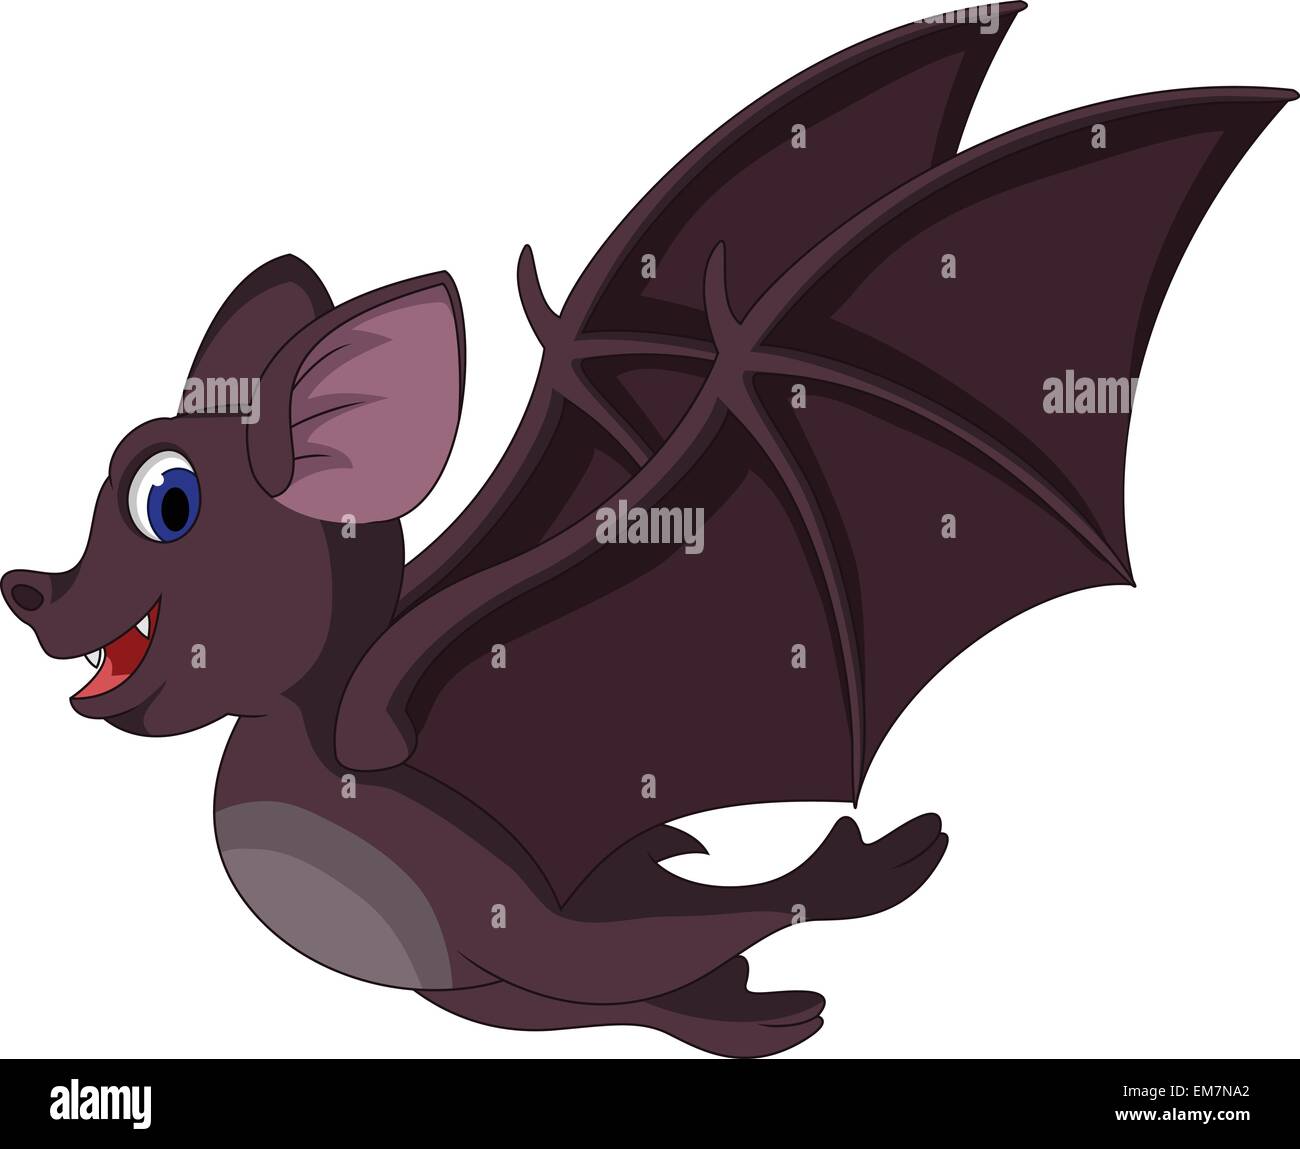 Cartoon bat hi-res stock photography and images - Alamy